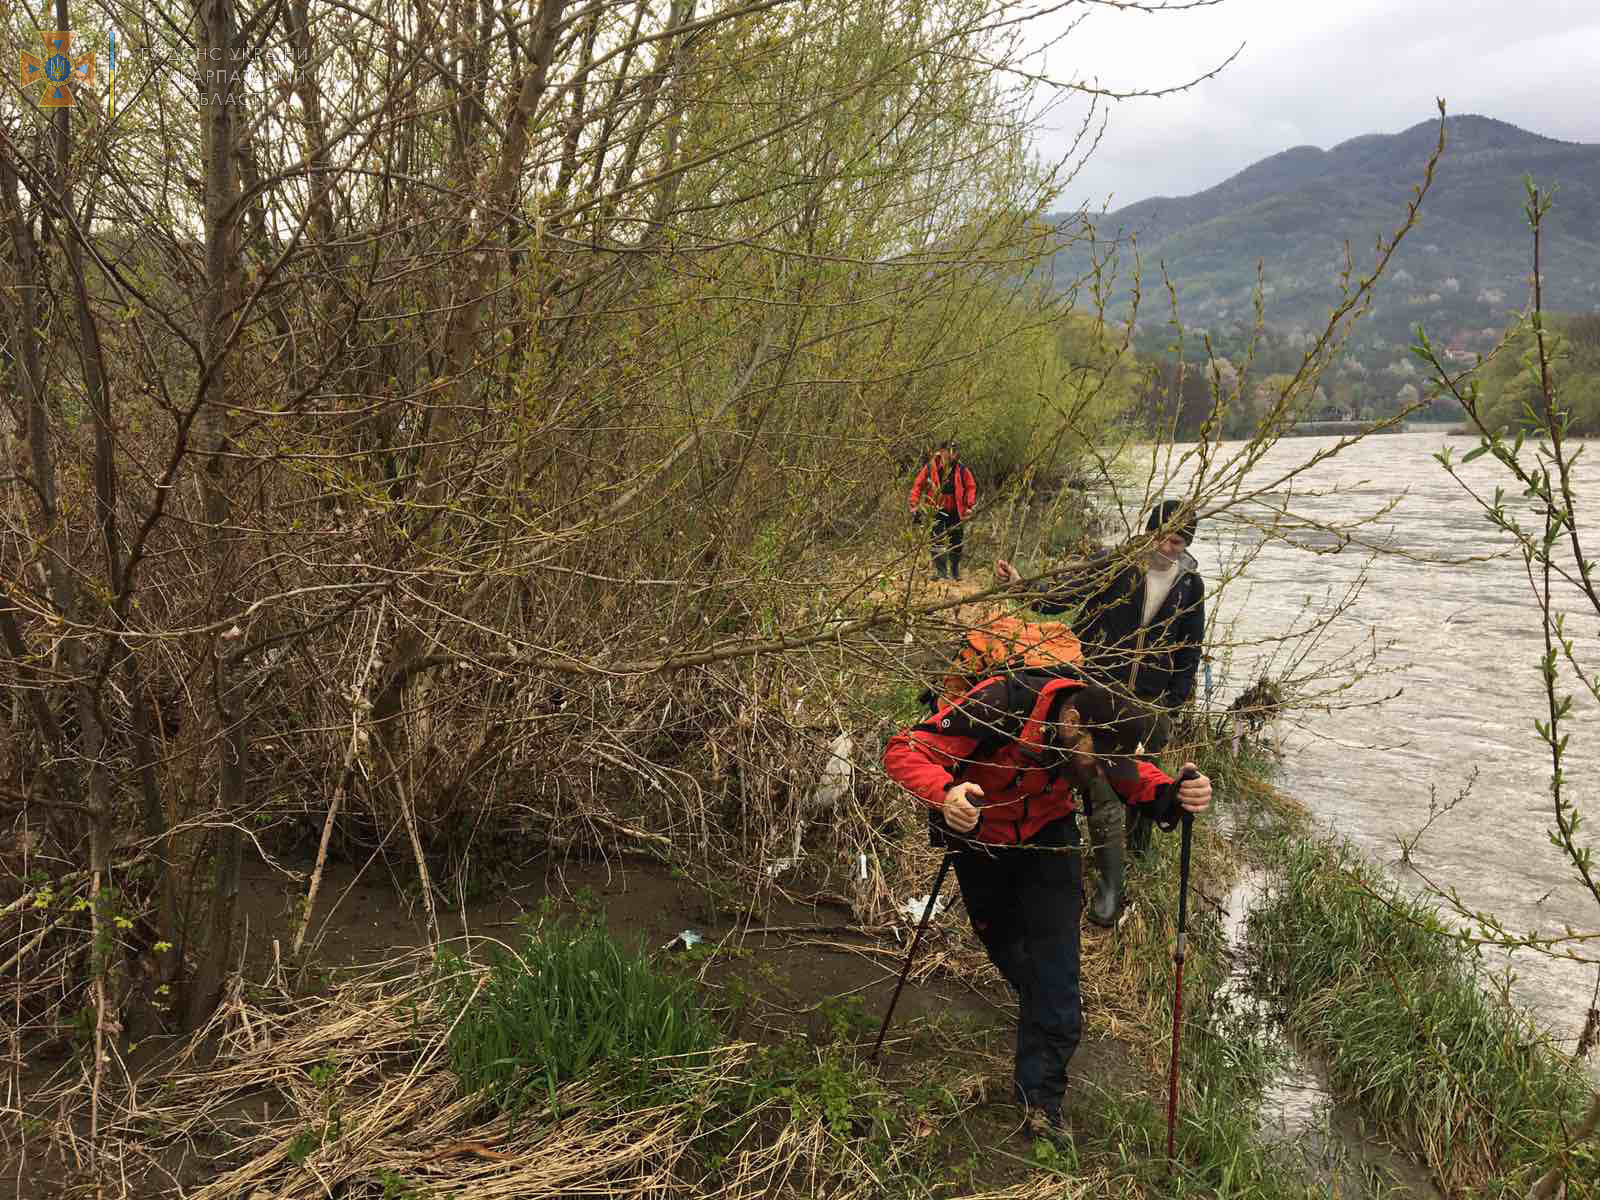 18 мая в 10:00 в Эсы Закарпатья поступило сообщение от дежурного Хустского РОВД об обнаружении тела на берегу реки Тиса близ Хуста.